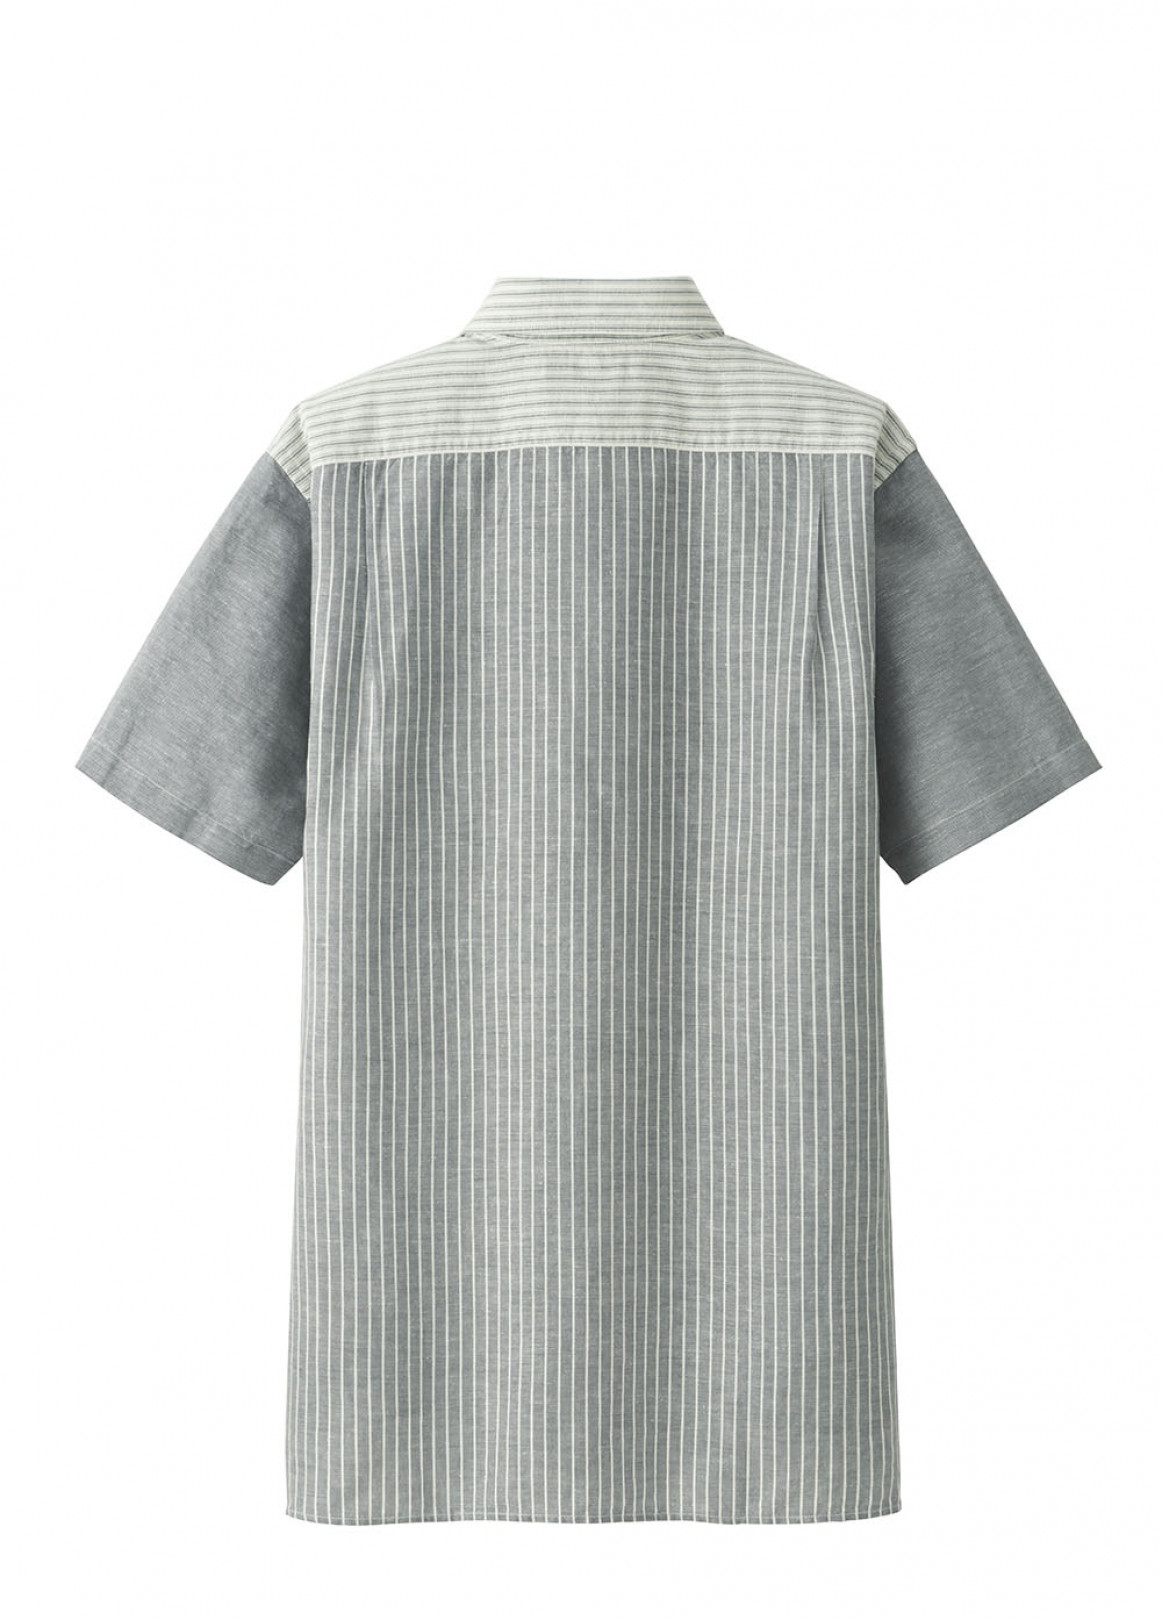 「UNIQLO and JW ANDERSON リネンコットンシャツ(半袖)」2,990円